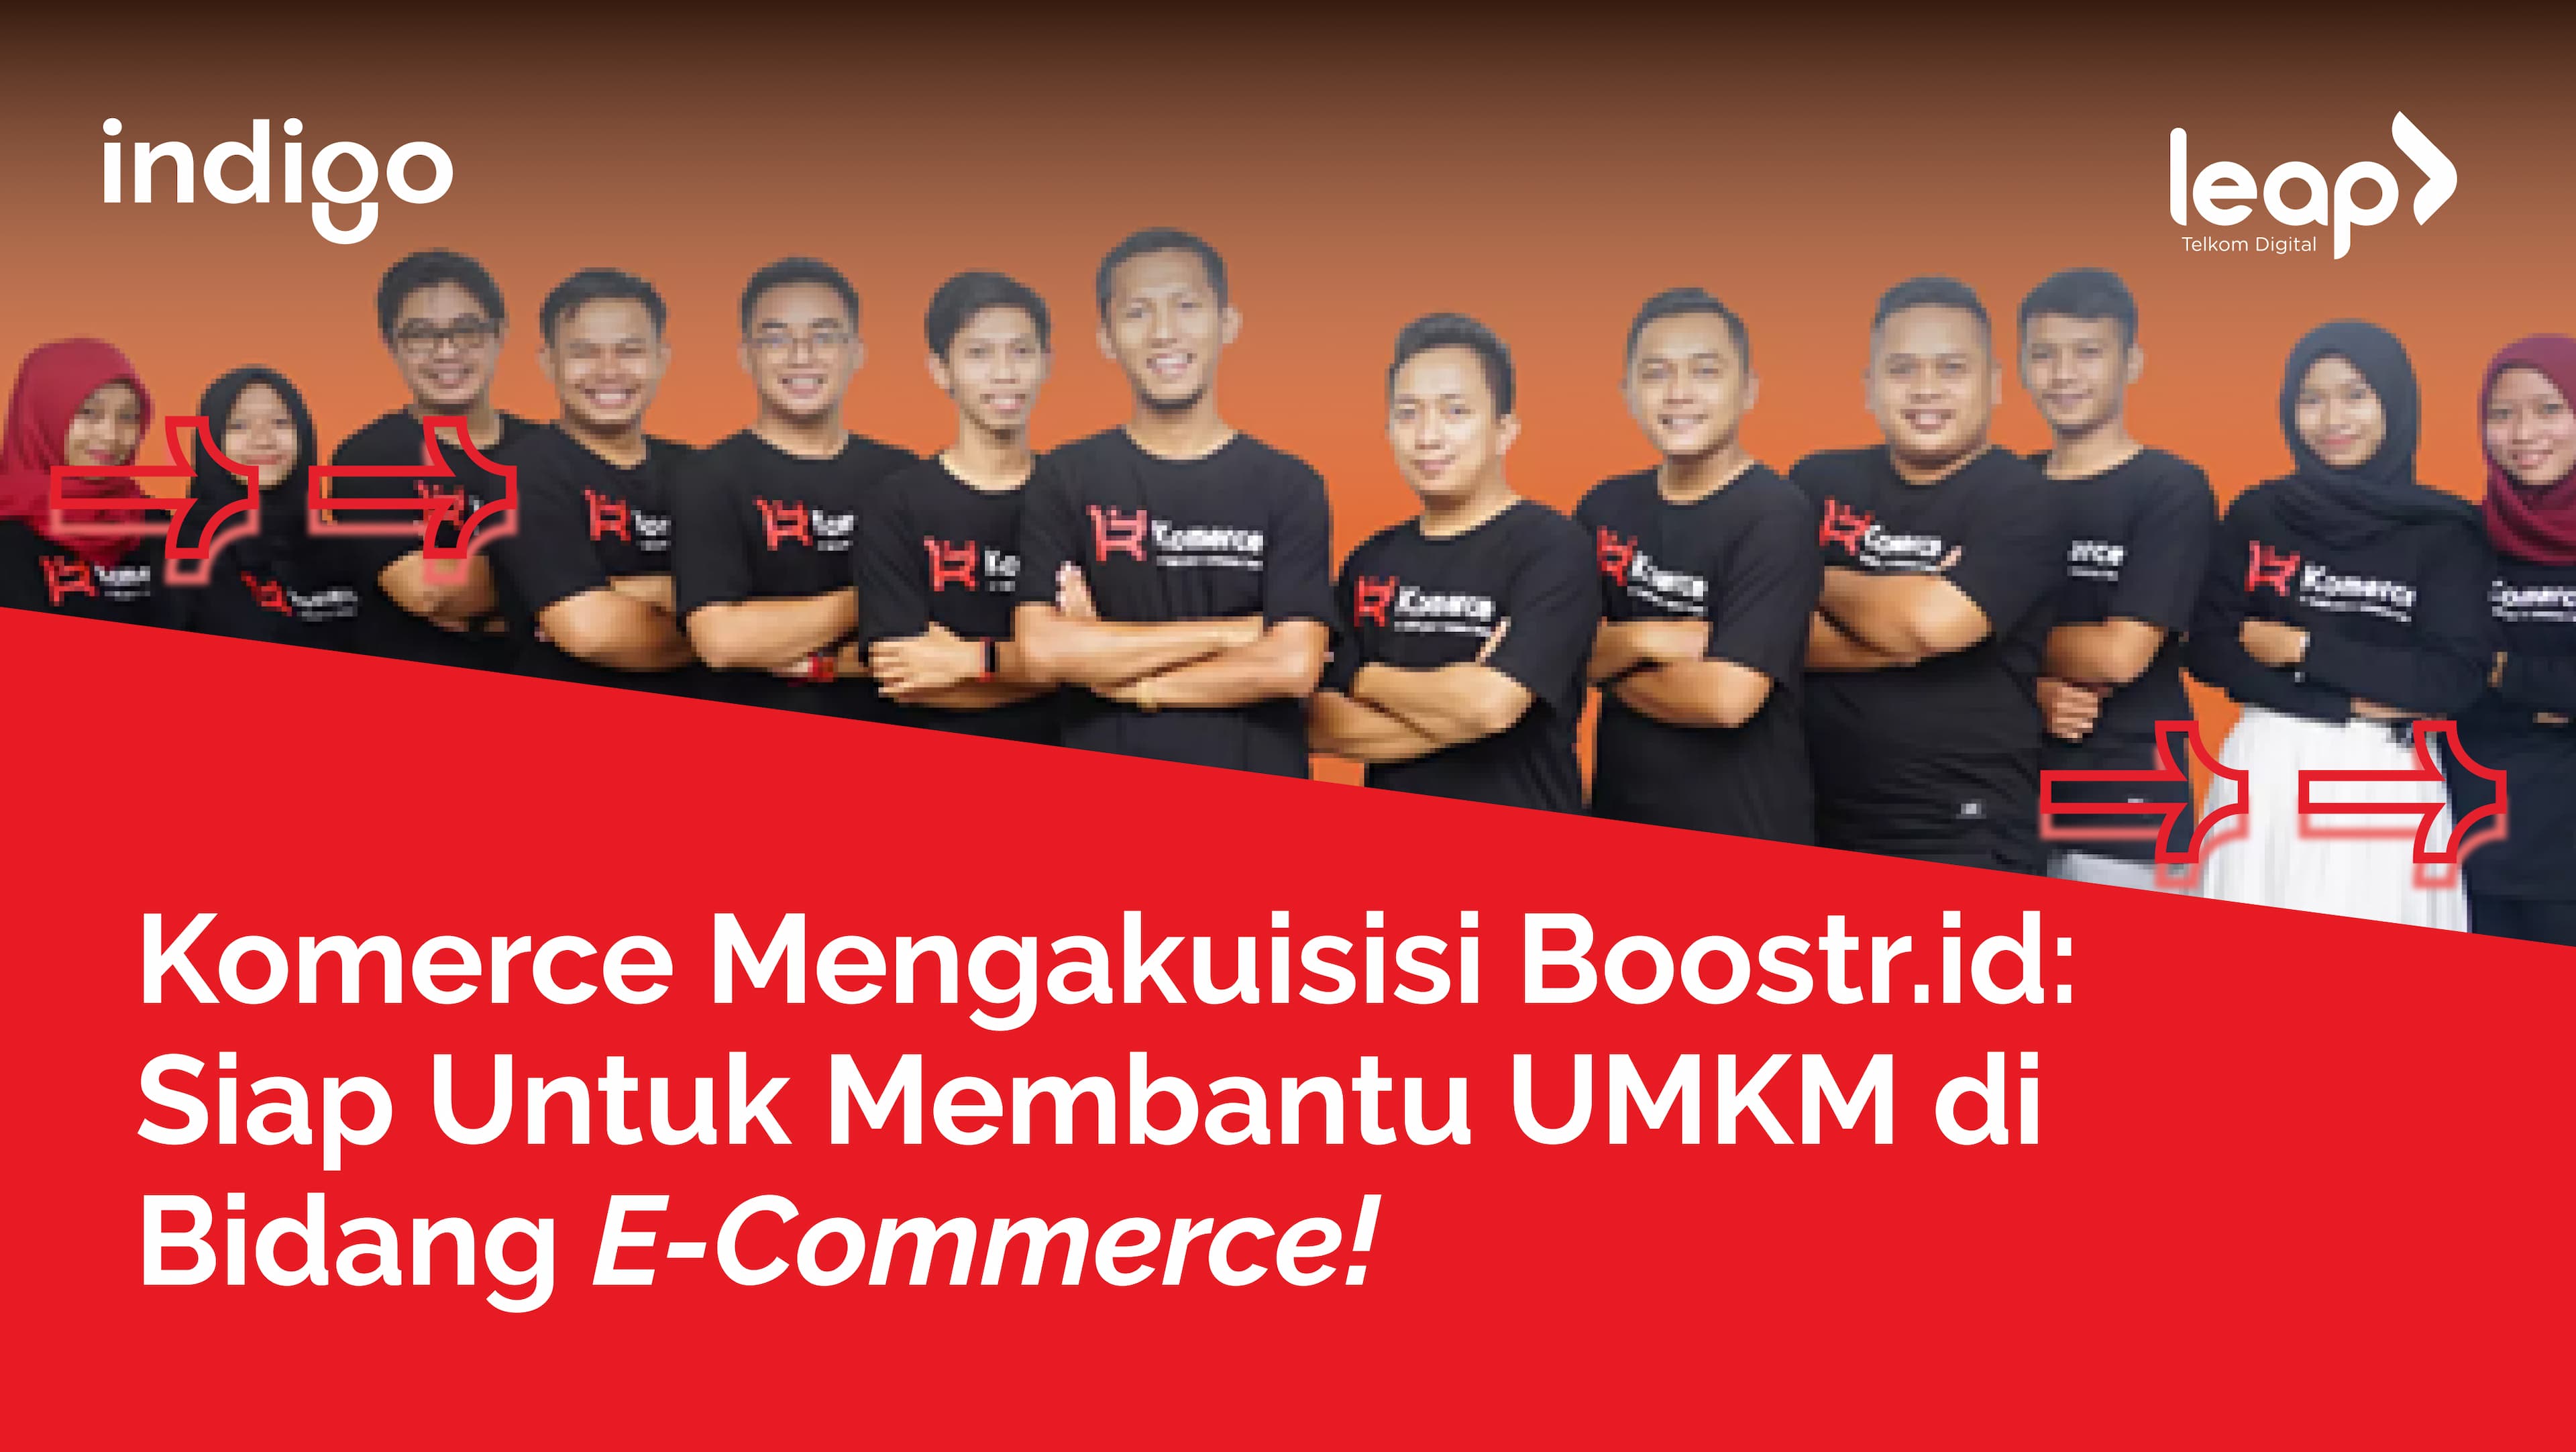 Komerce Mengakuisisi Boostr.id: Siap Untuk Membantu UMKM di Bidang E-Commerce!